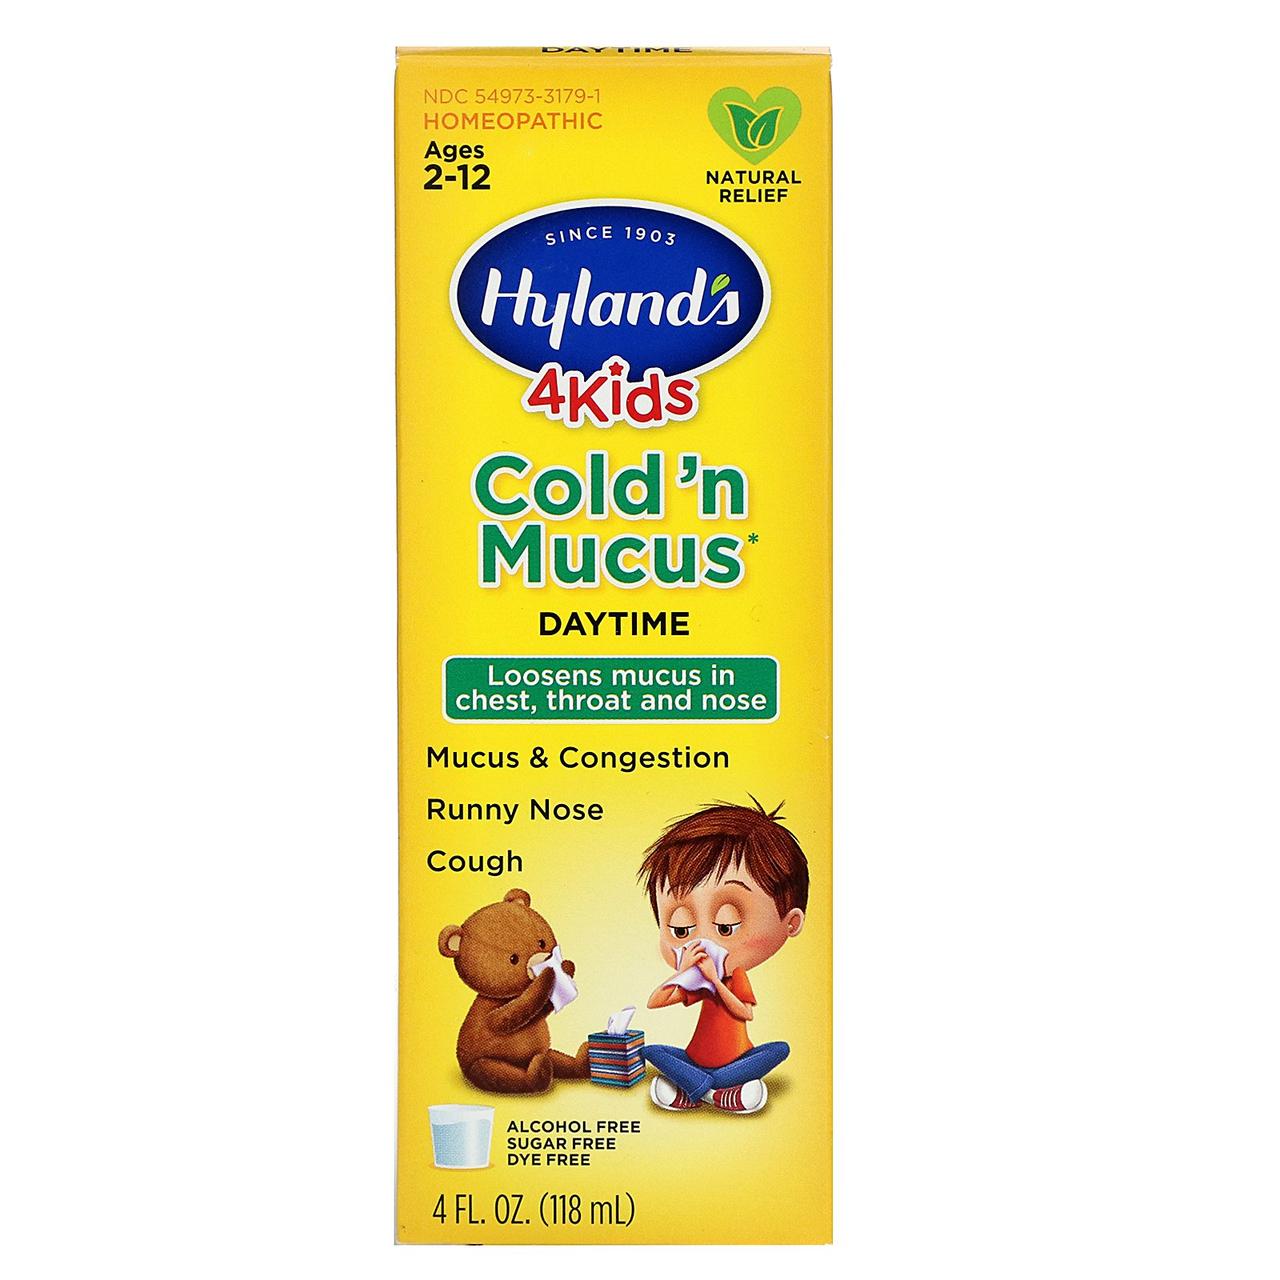 Hyland's, 4 Kids, застуда і мокрота, вік 2-12 років, 4 ж. унц. (118 мл), фото 1